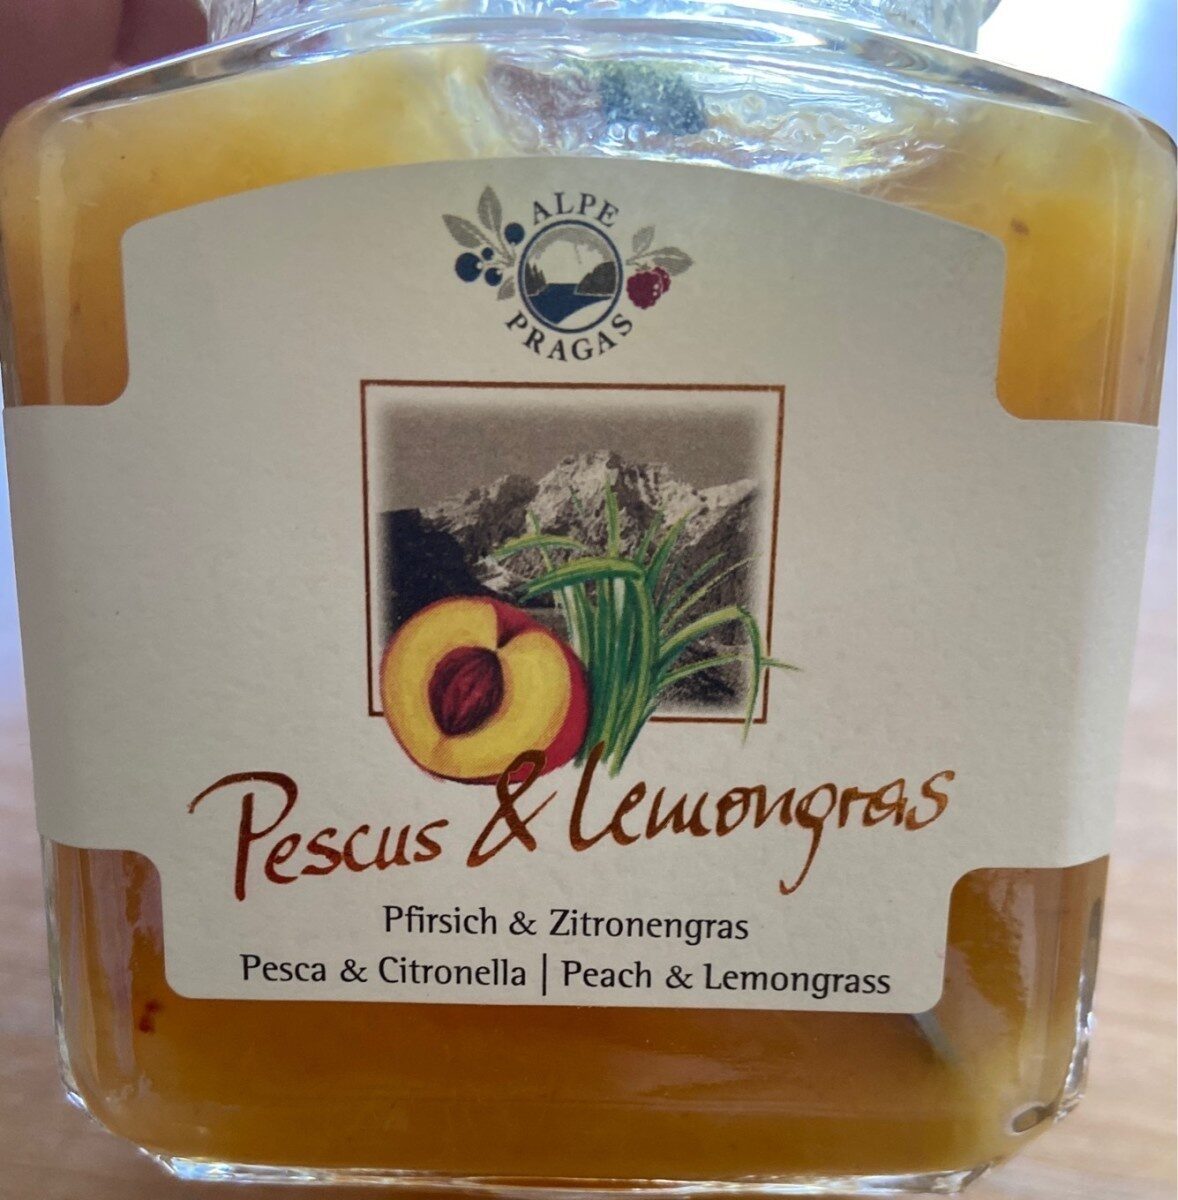 Pescus & lemongras - Product - de